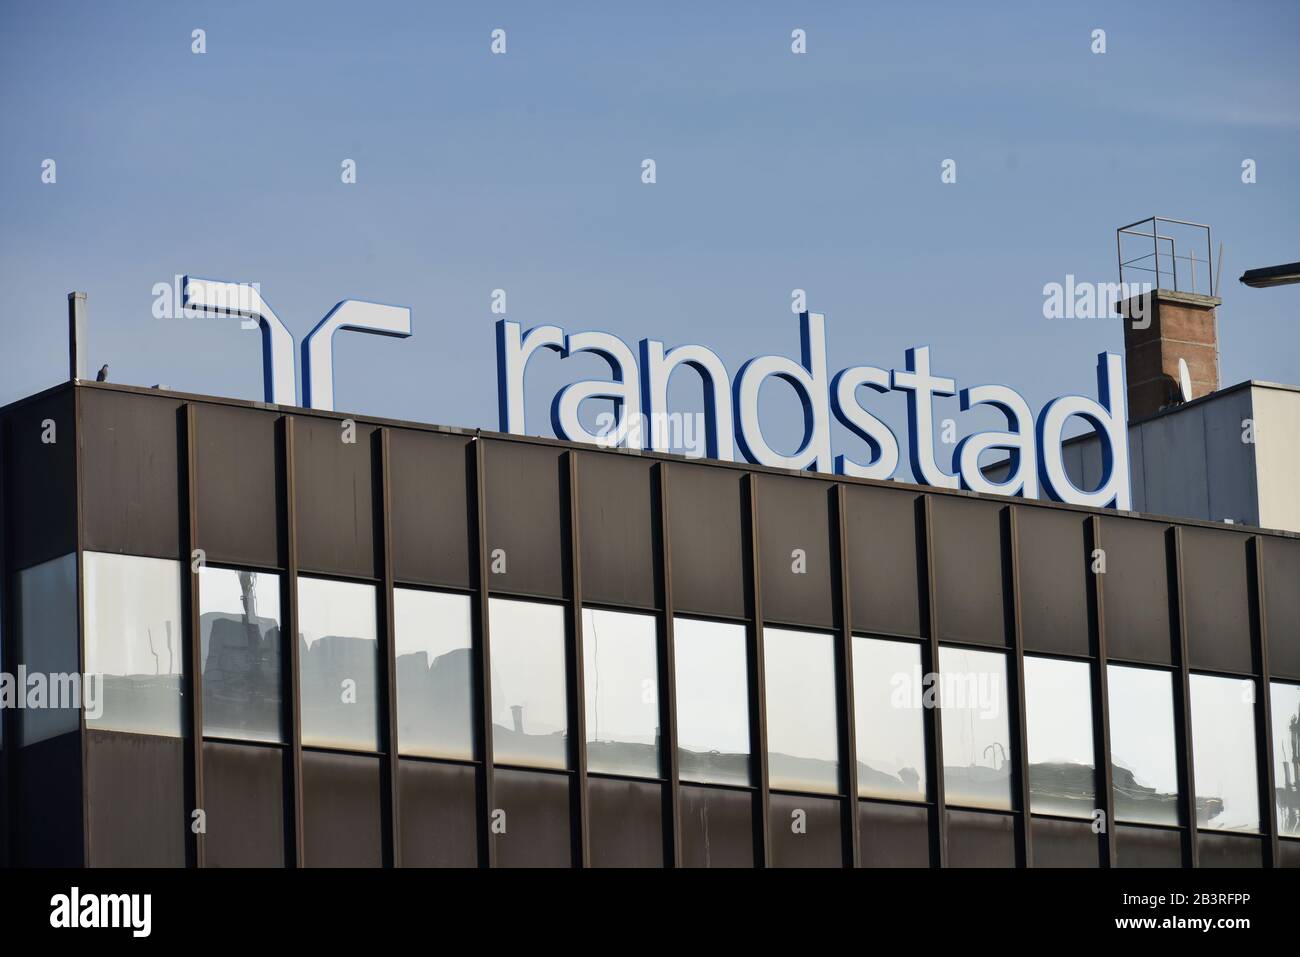 Randstad, Werbung, Schlossstrasse, Steglitz, Berlin, Deutschland Stock Photo